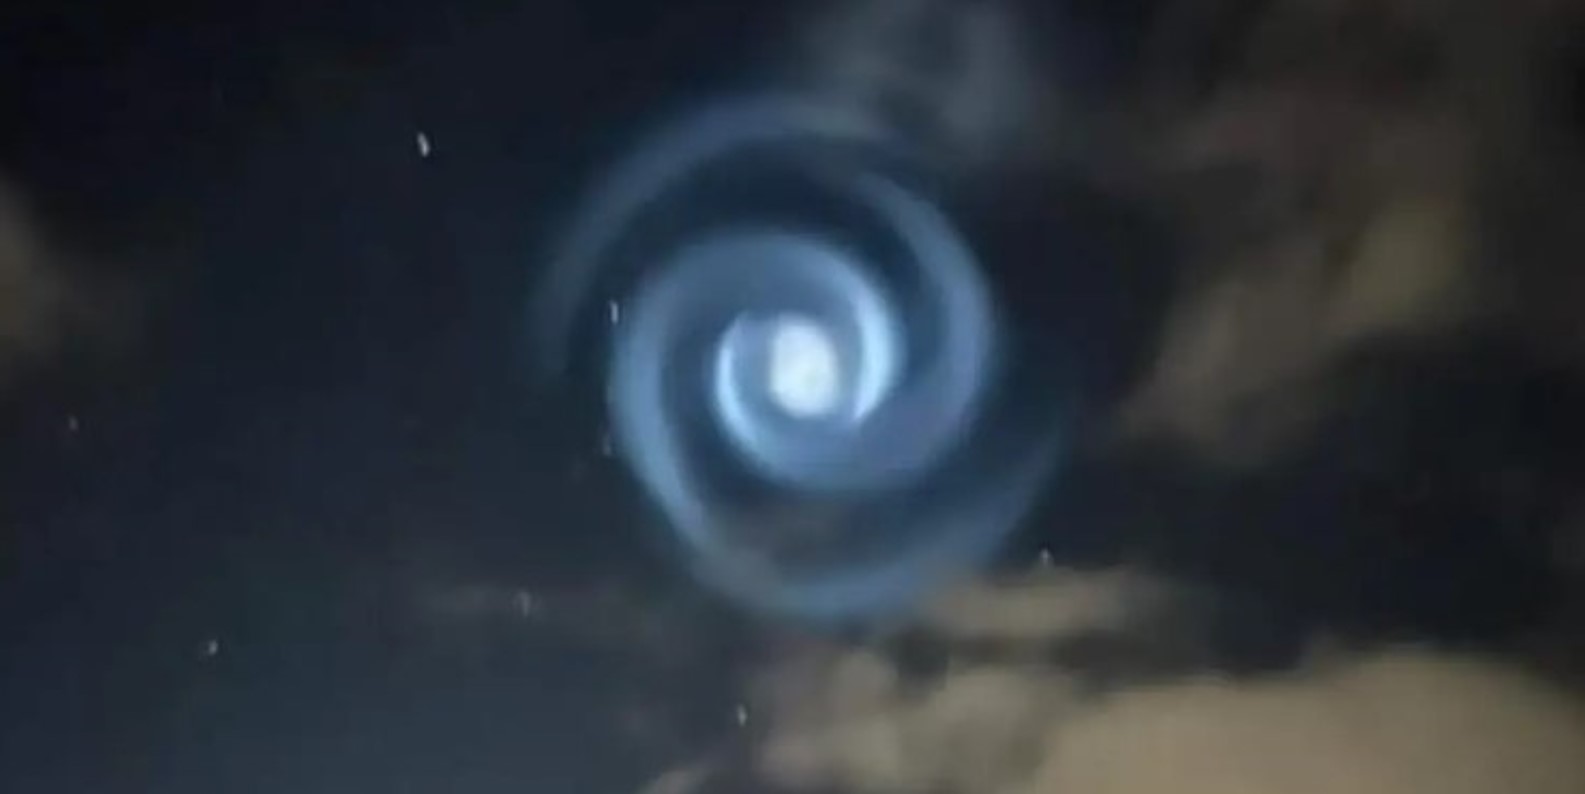 SpaceX : une étrange spirale lumineuse apparaît dans le ciel